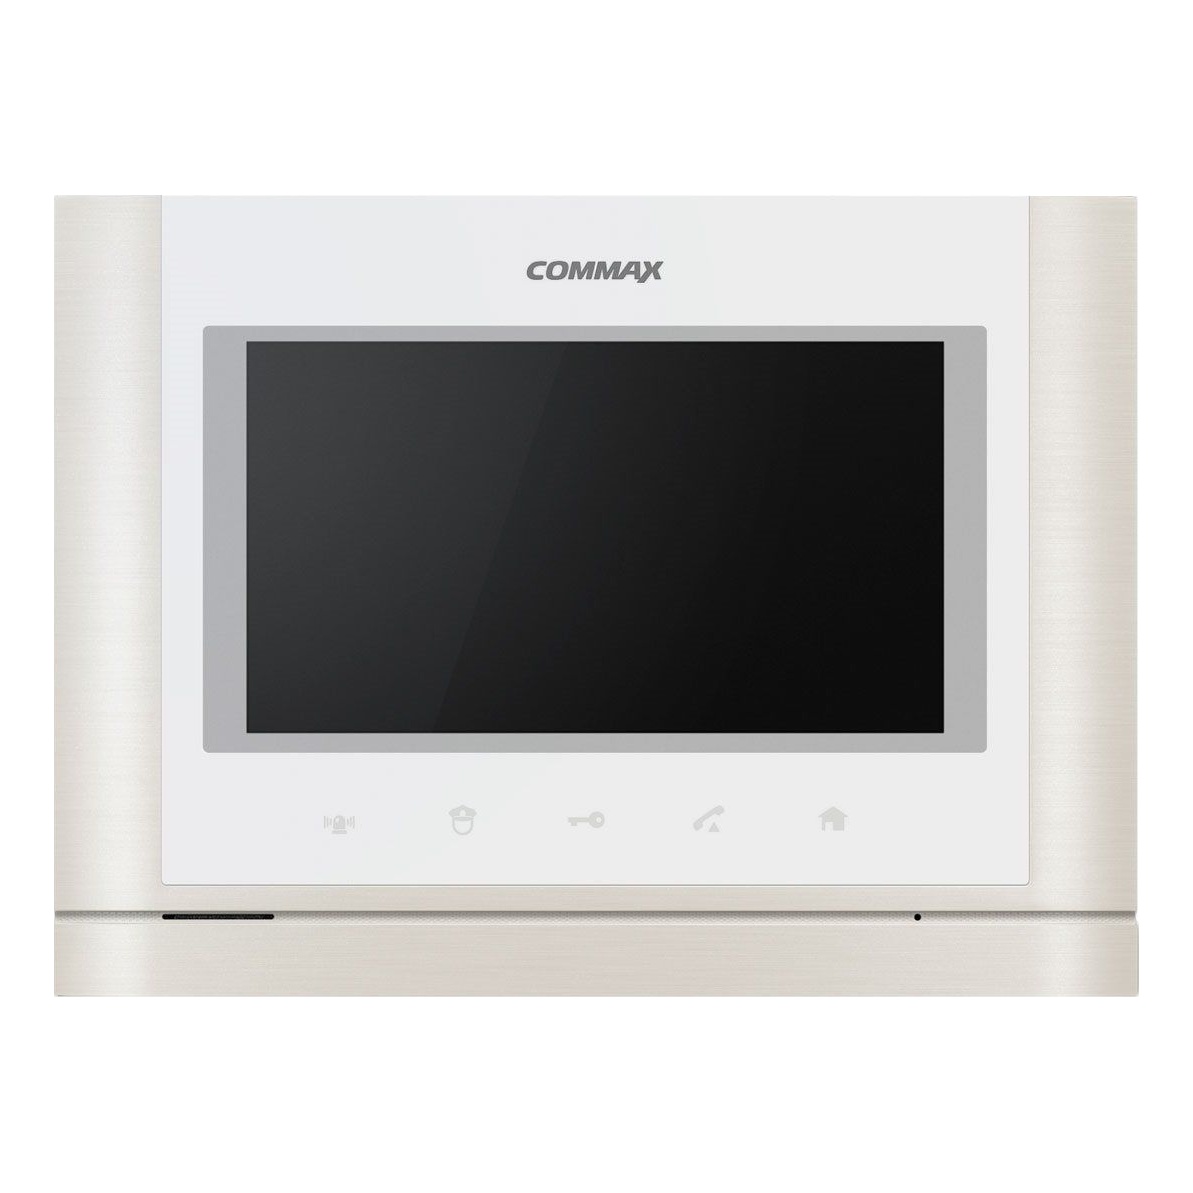 Commax CMV-70MX/VZ WHI Монитор цветной видеодомофона, совместимый с координатно-матричными домофонами, цвет Белый